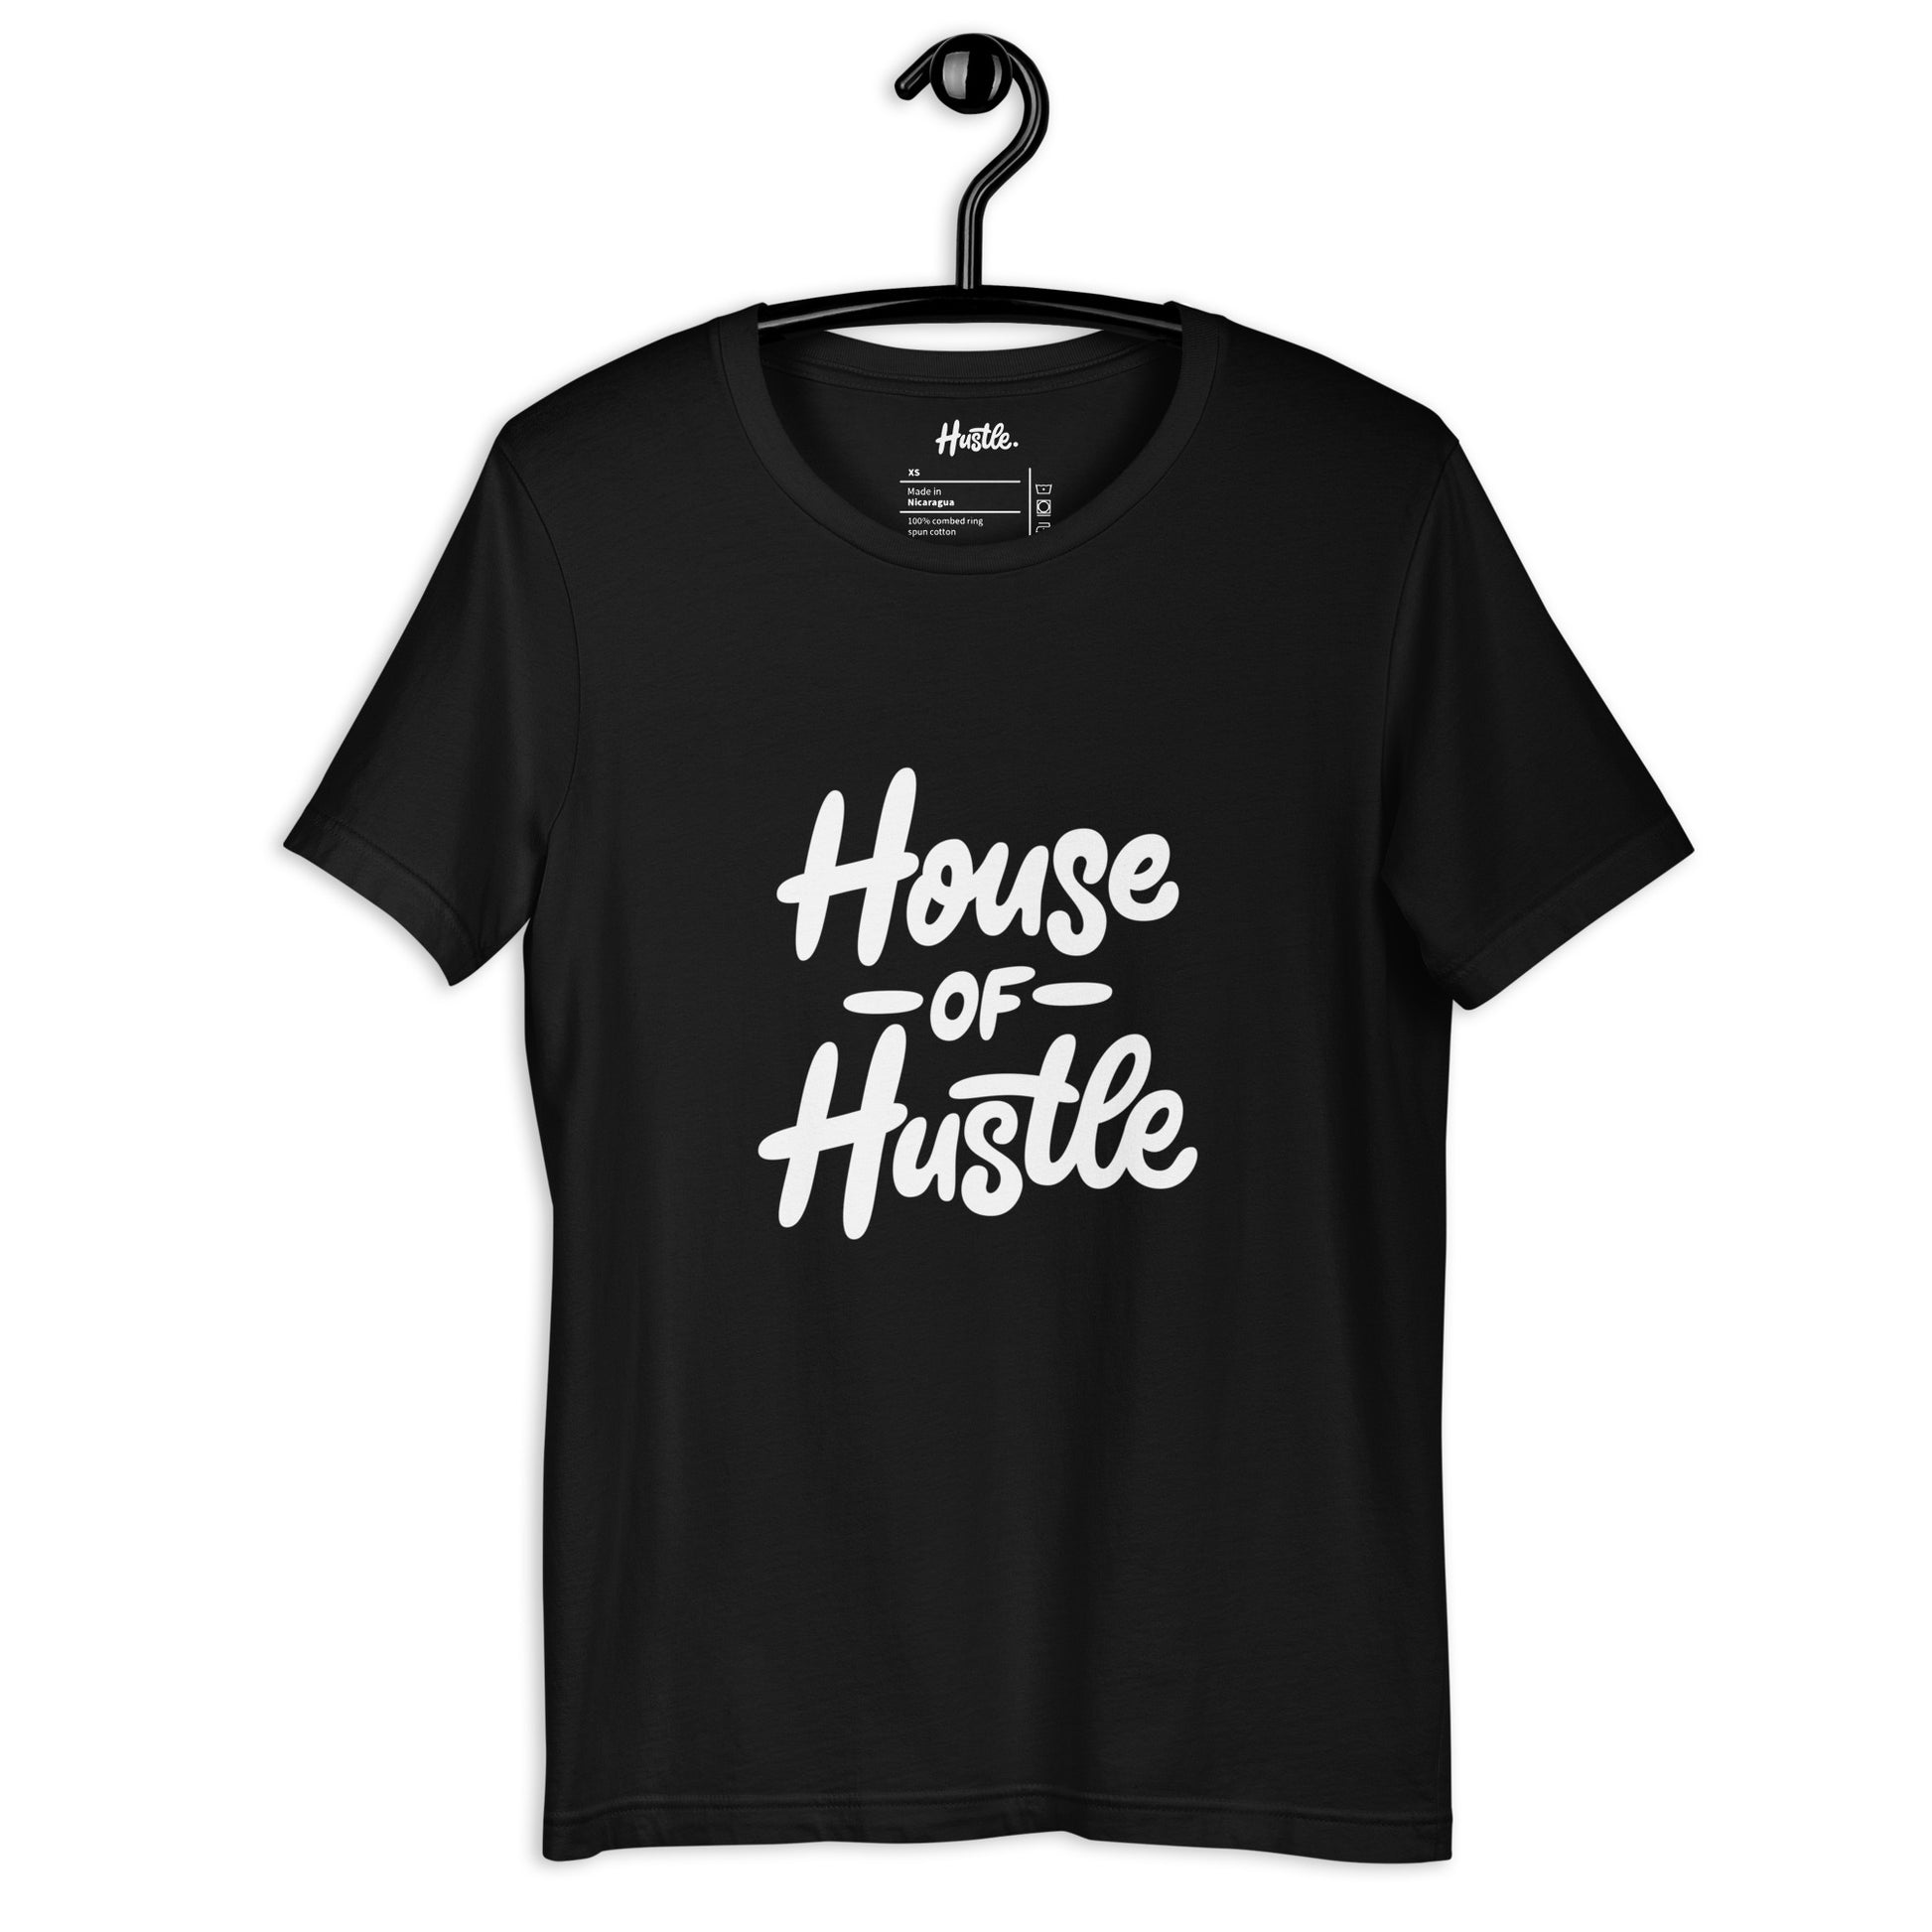 House Of Hustle 23 Hoodie